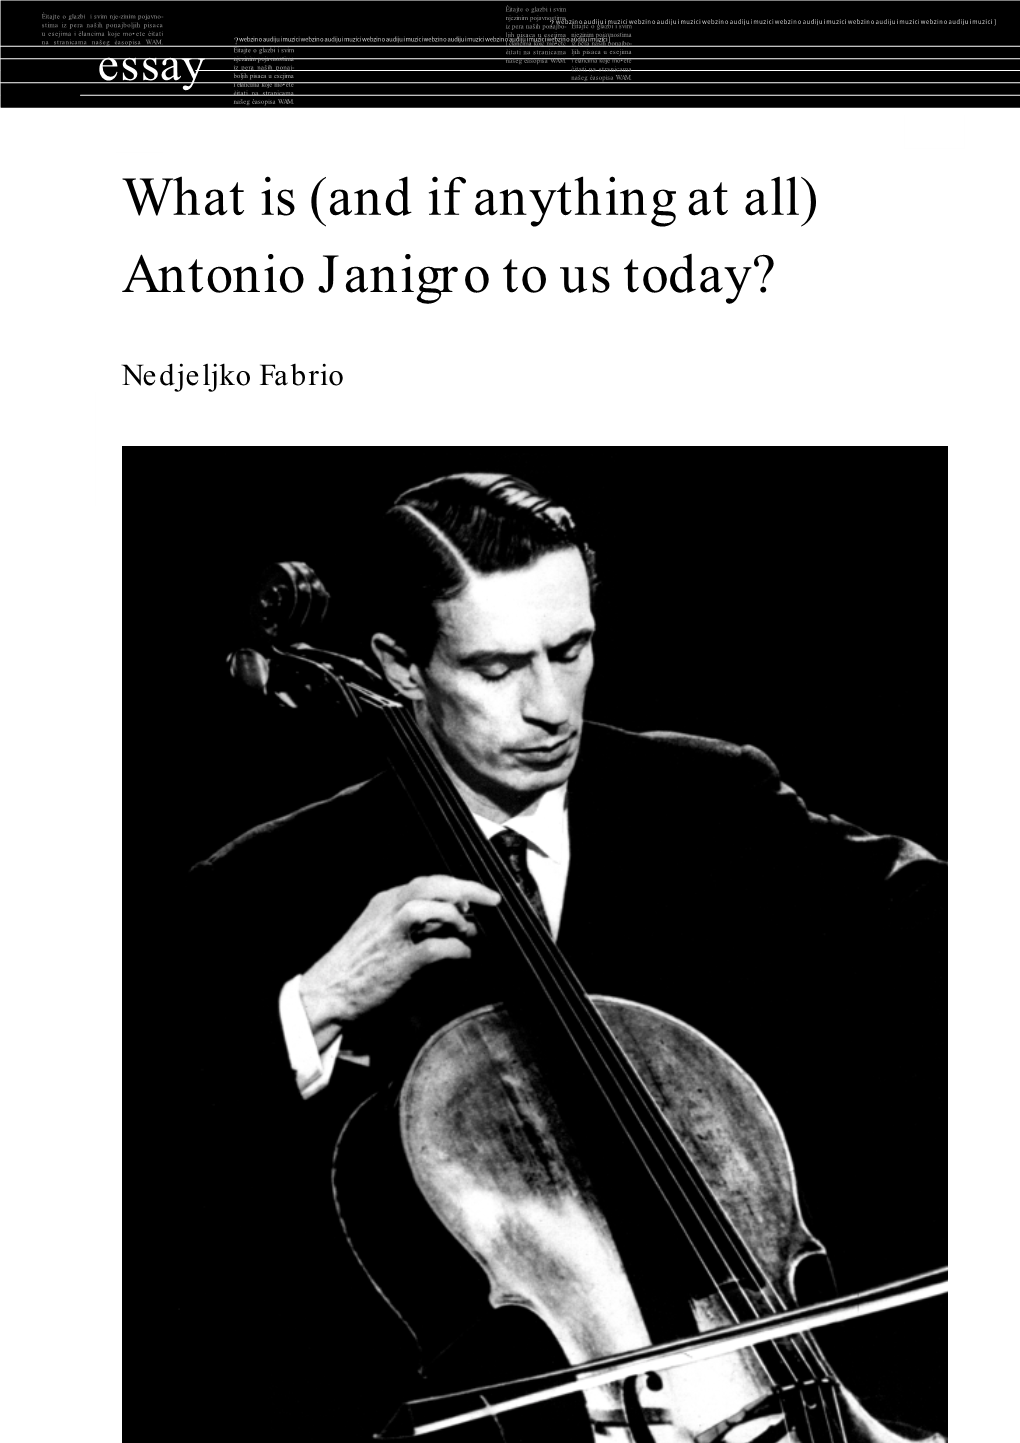 Antonio Janigro to Us Today?